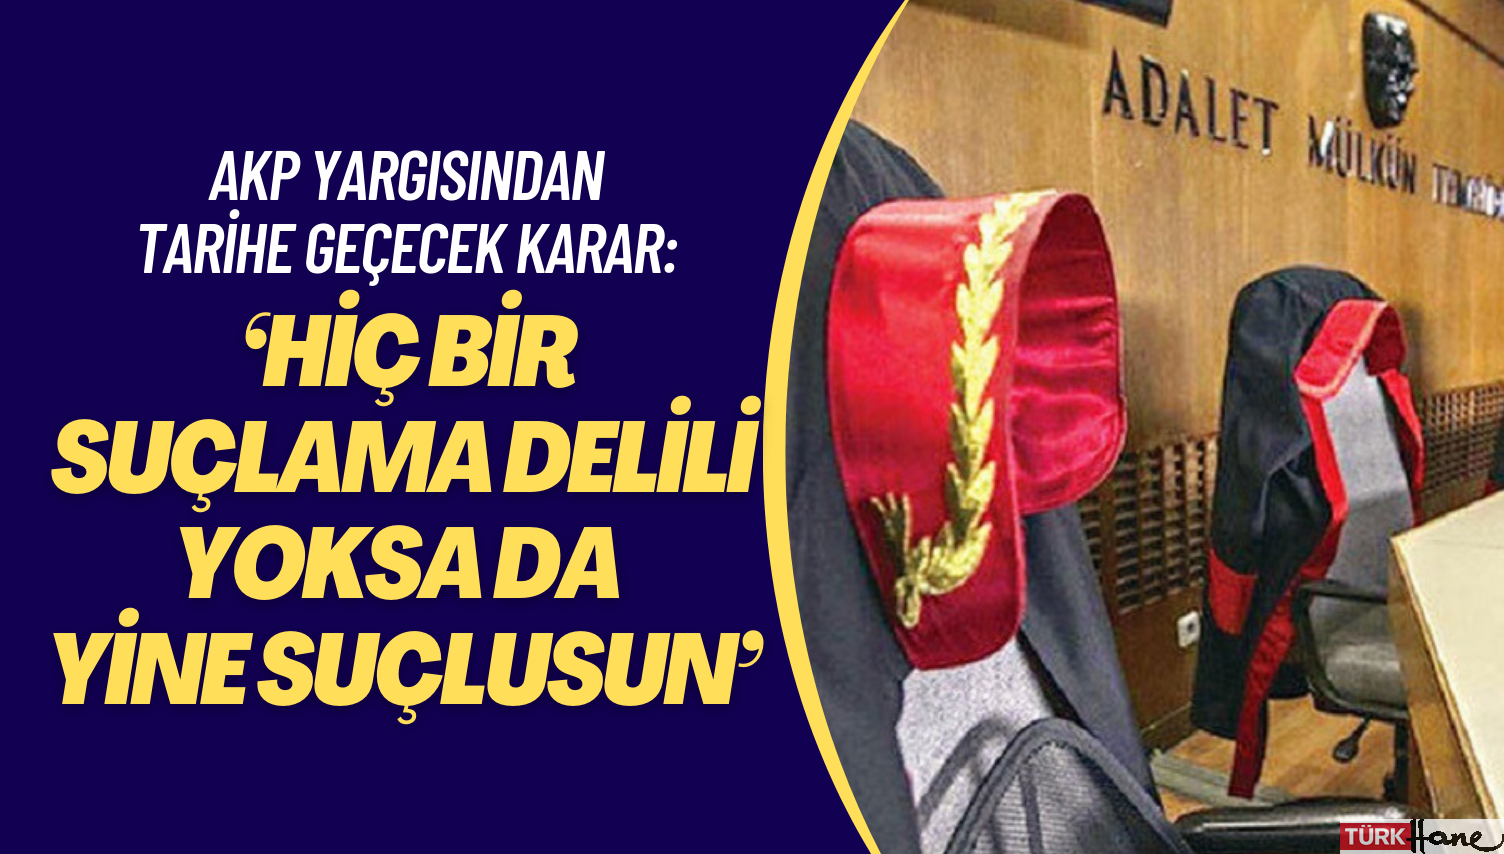 AKP yargısından tarihe geçecek karar: ‘Hiç bir suçlama delili yoksa da yine suçlusun’